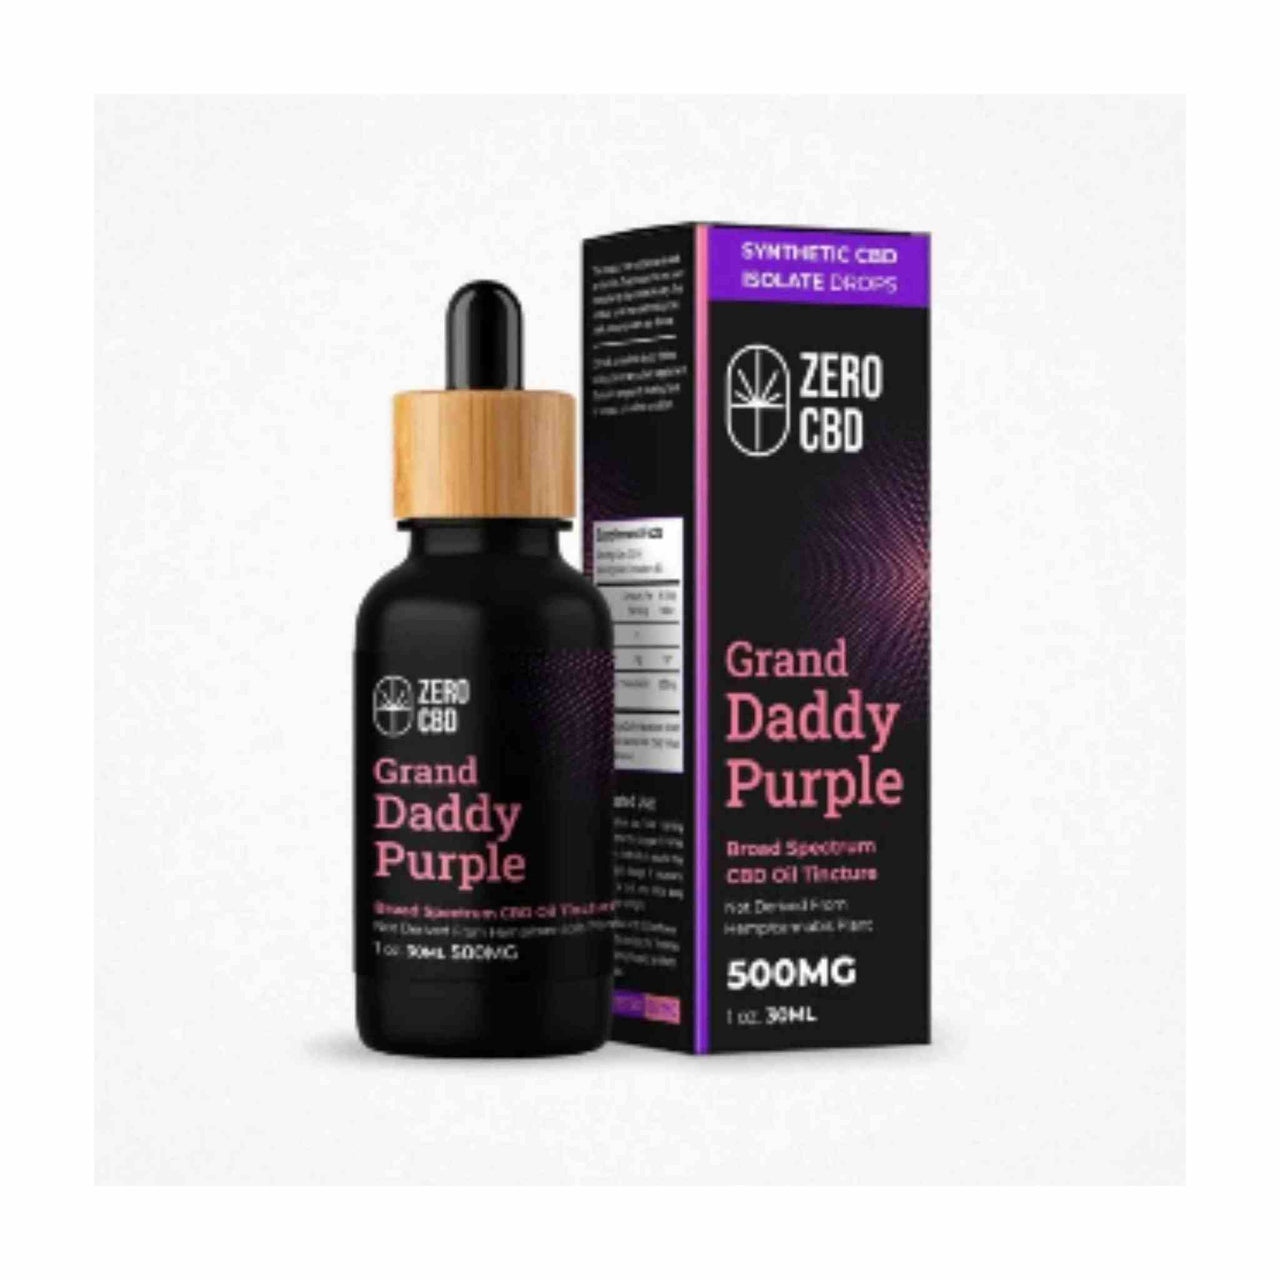 Zero CBD - Grand Daddy Purple Broad Spectrum CBD Oil Tincture (30ml)